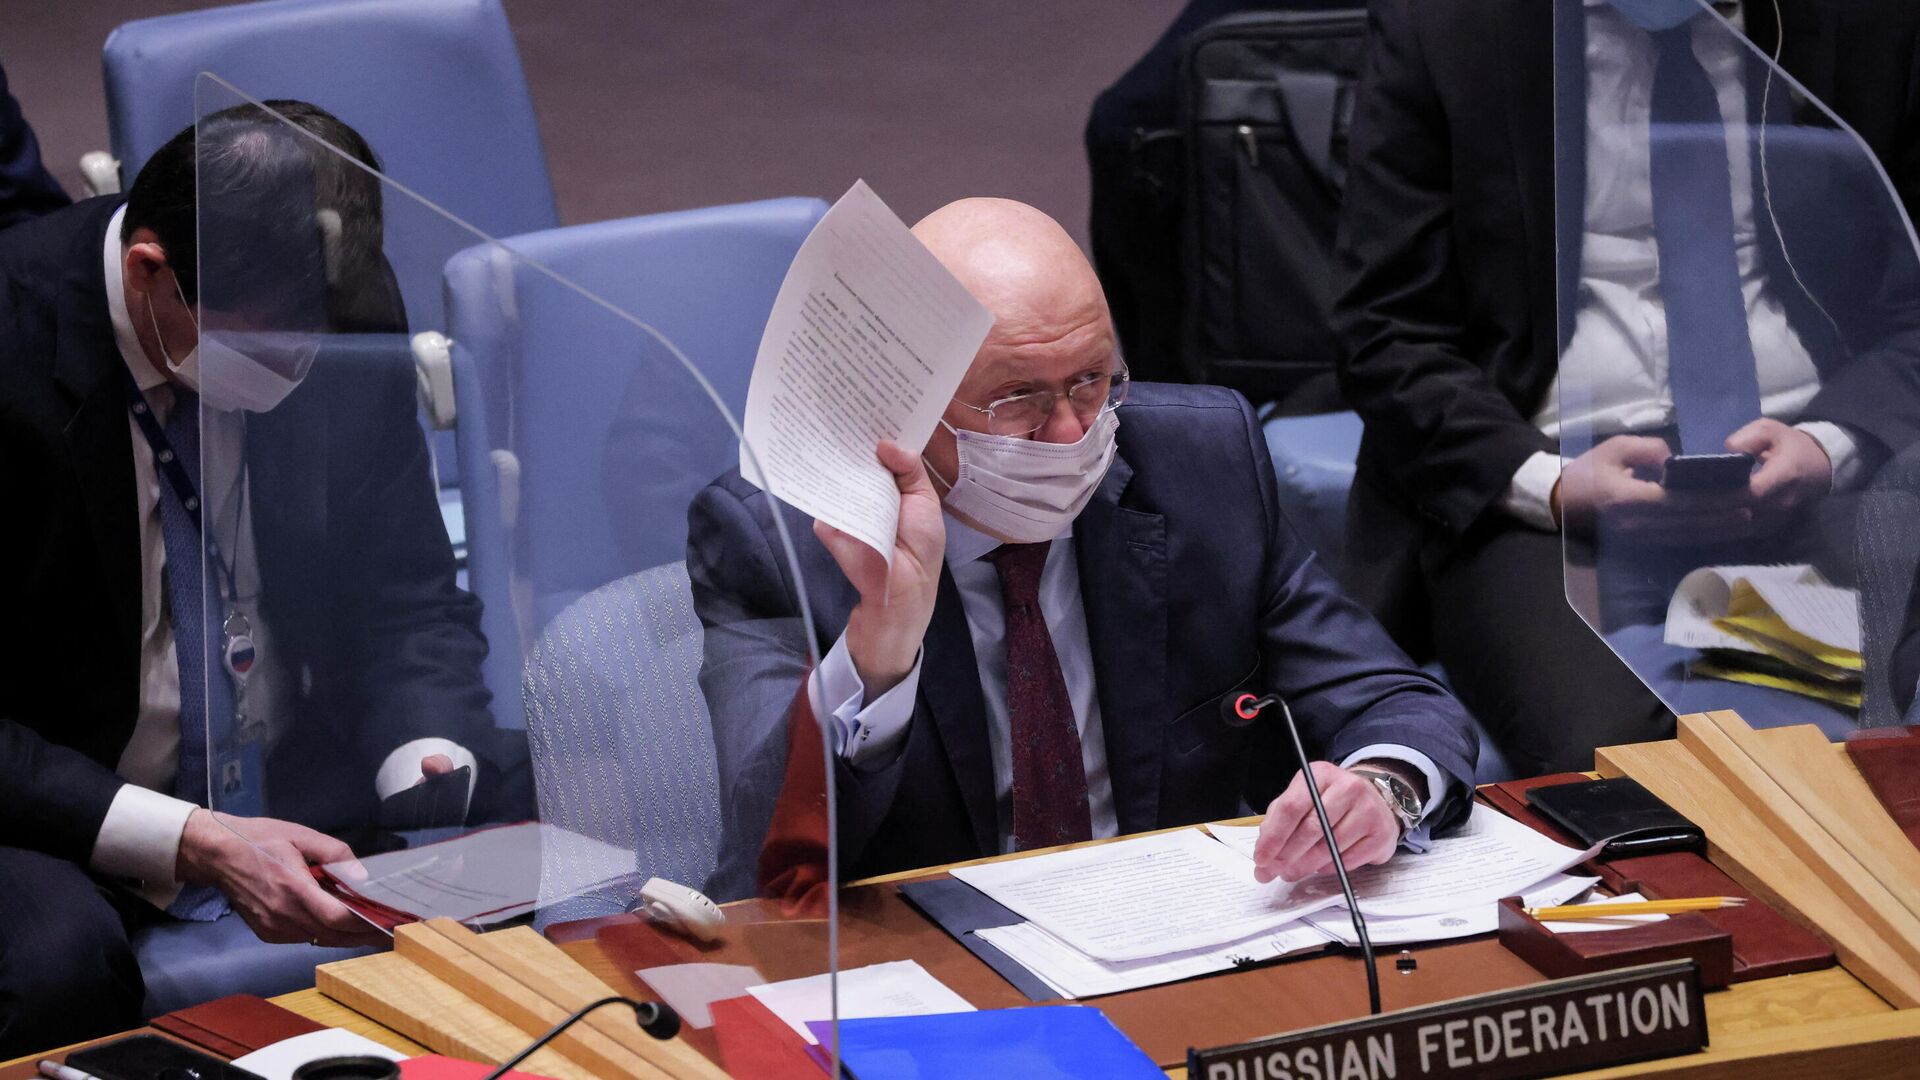 سفير روسيا لدى الأمم المتحدة فاسيلي نيبينزيا خلال جلسة نقاش مجلس الأمن الدولي حول أزمة أوكرانيا وروسيا، الأمم المتحدة، نيويورك، الولايات المتحدة 31 يناير 2022  - سبوتنيك عربي, 1920, 24.02.2022